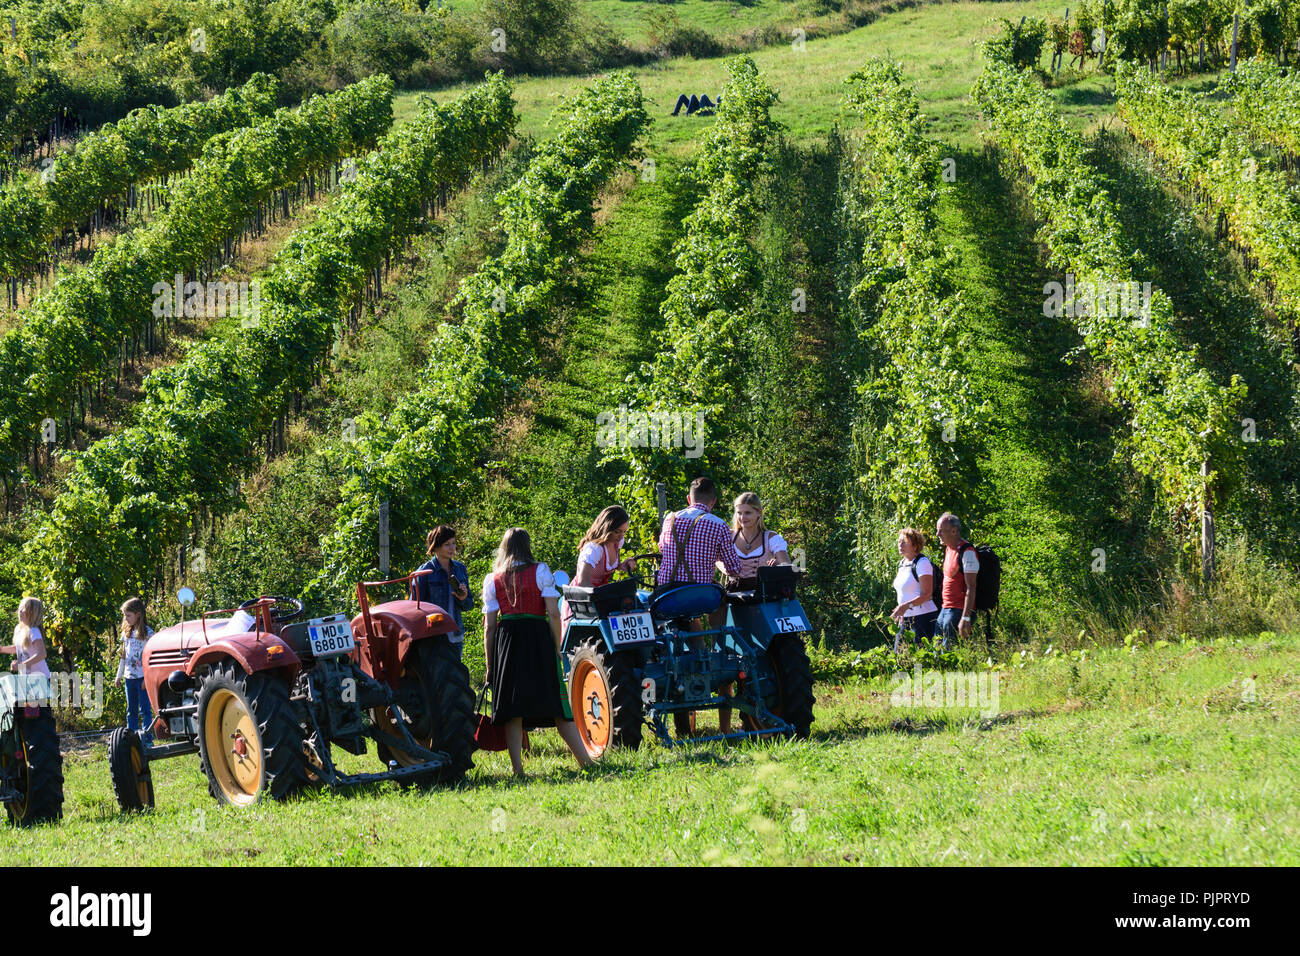 Neustiftgasse : tracteurs historiques au vignoble, au festival 'Genussmeile' le long de la 1ère ligne de l'eau vienne Wienerwald, chemin de randonnée, forêt de Vienne, Niederöste Banque D'Images